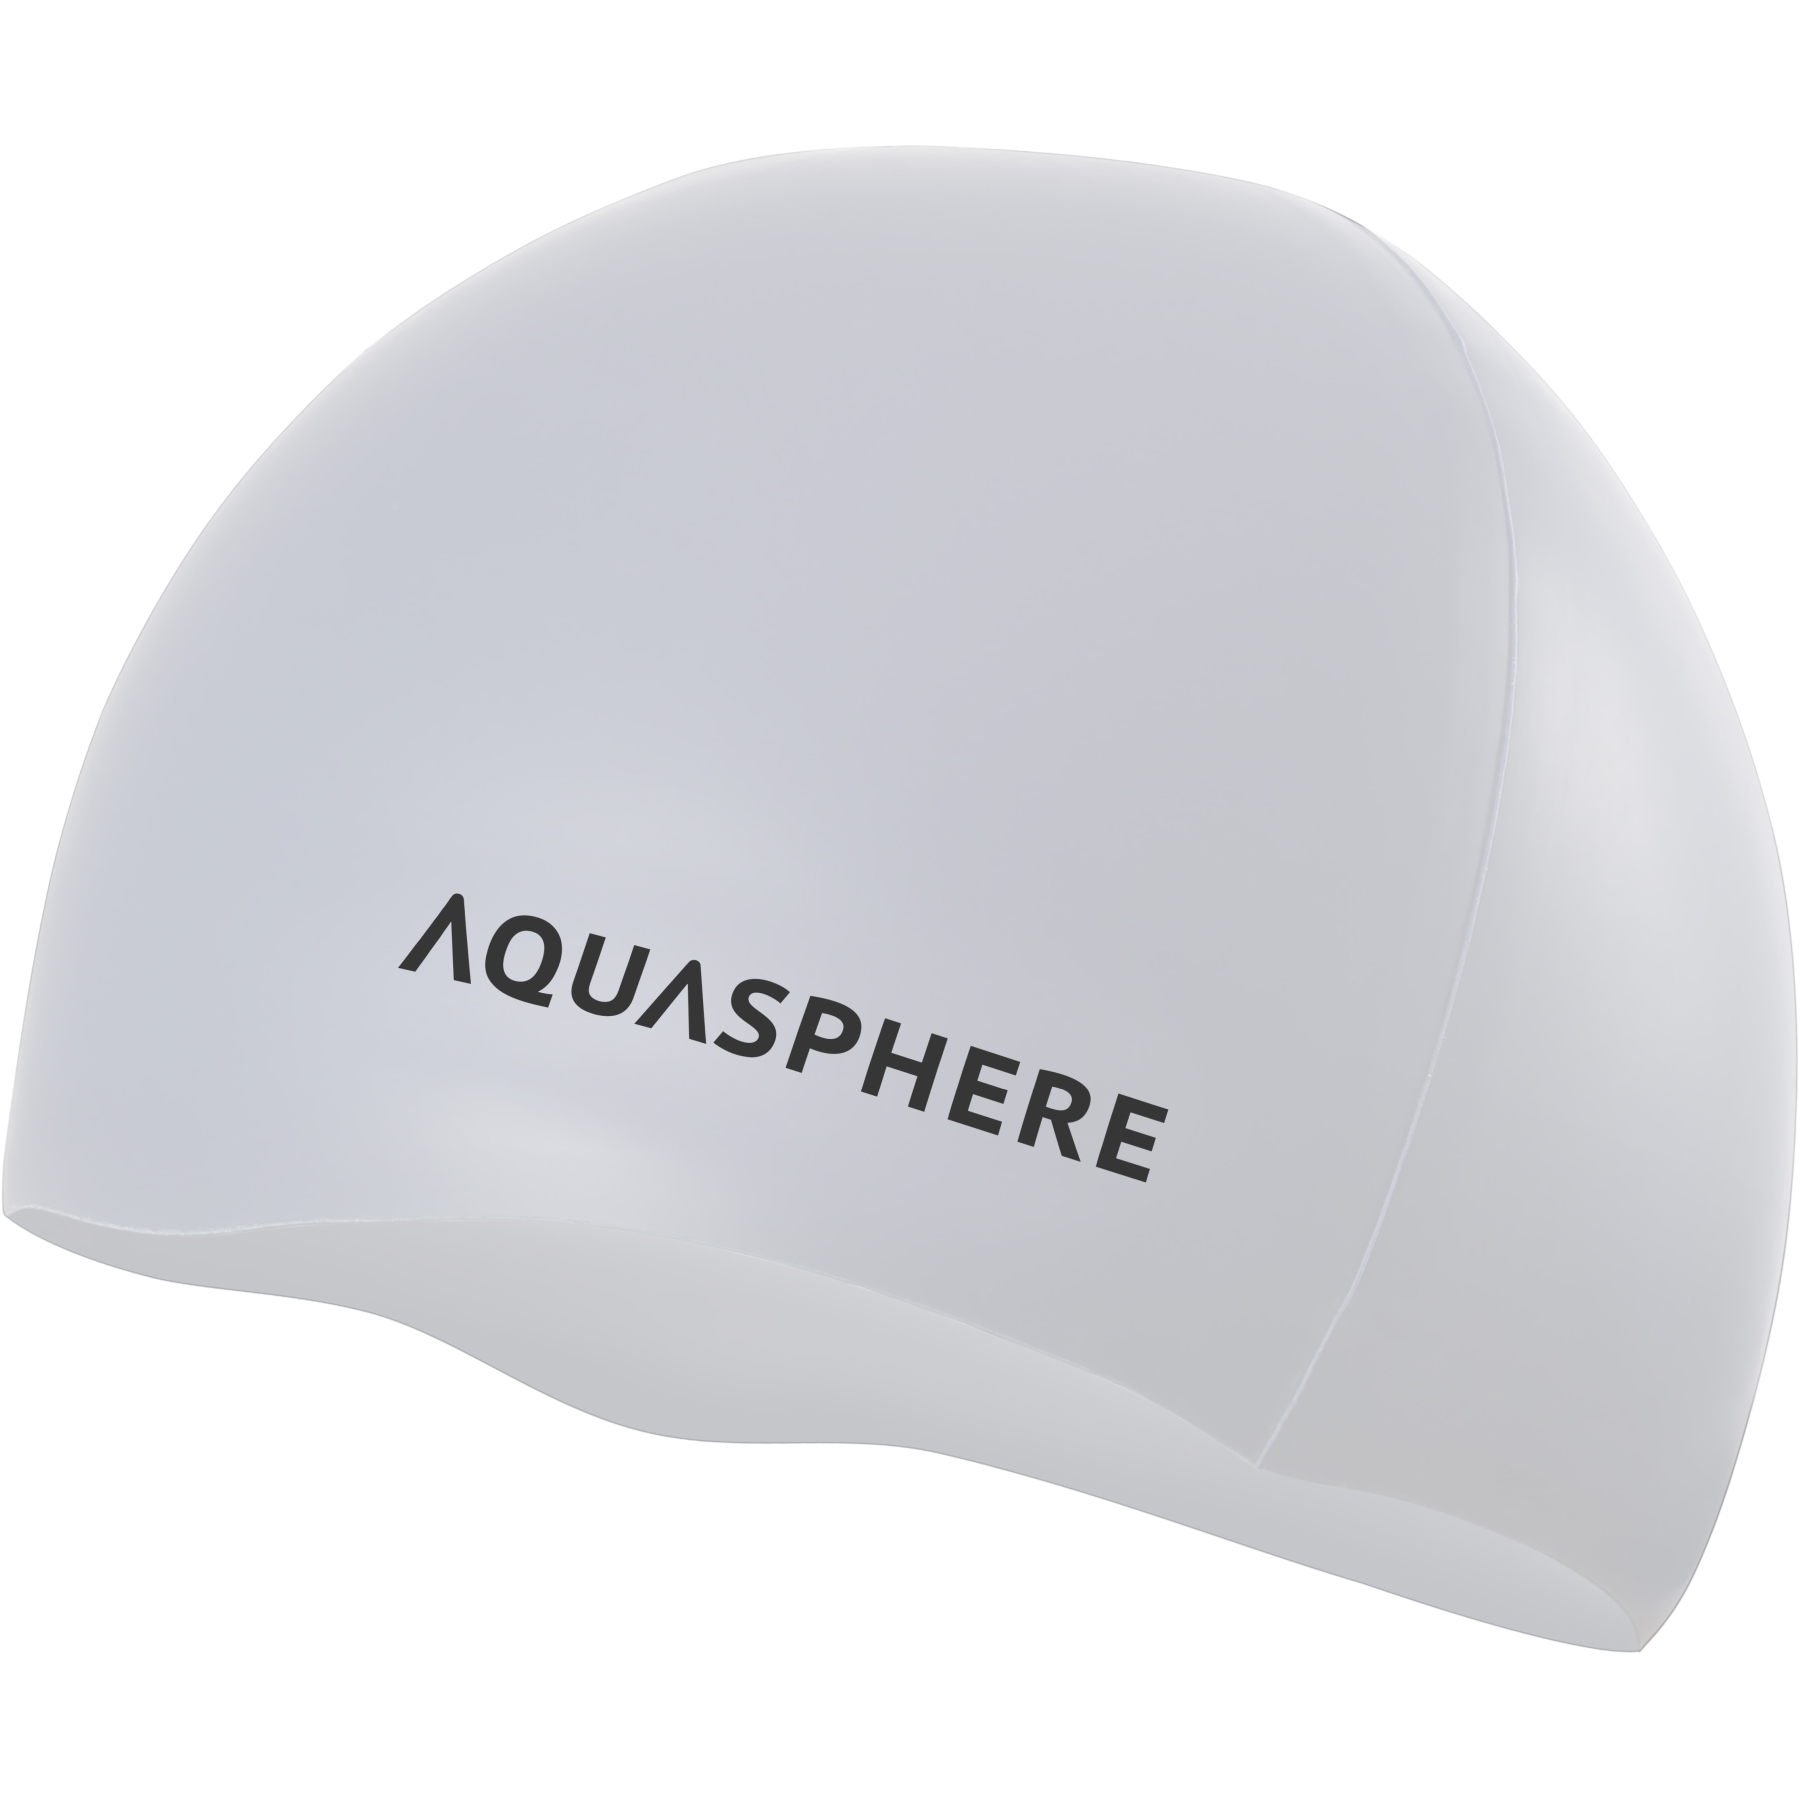 Image of AQUASPHERE Plain Silicone Swim Cap - White/Black